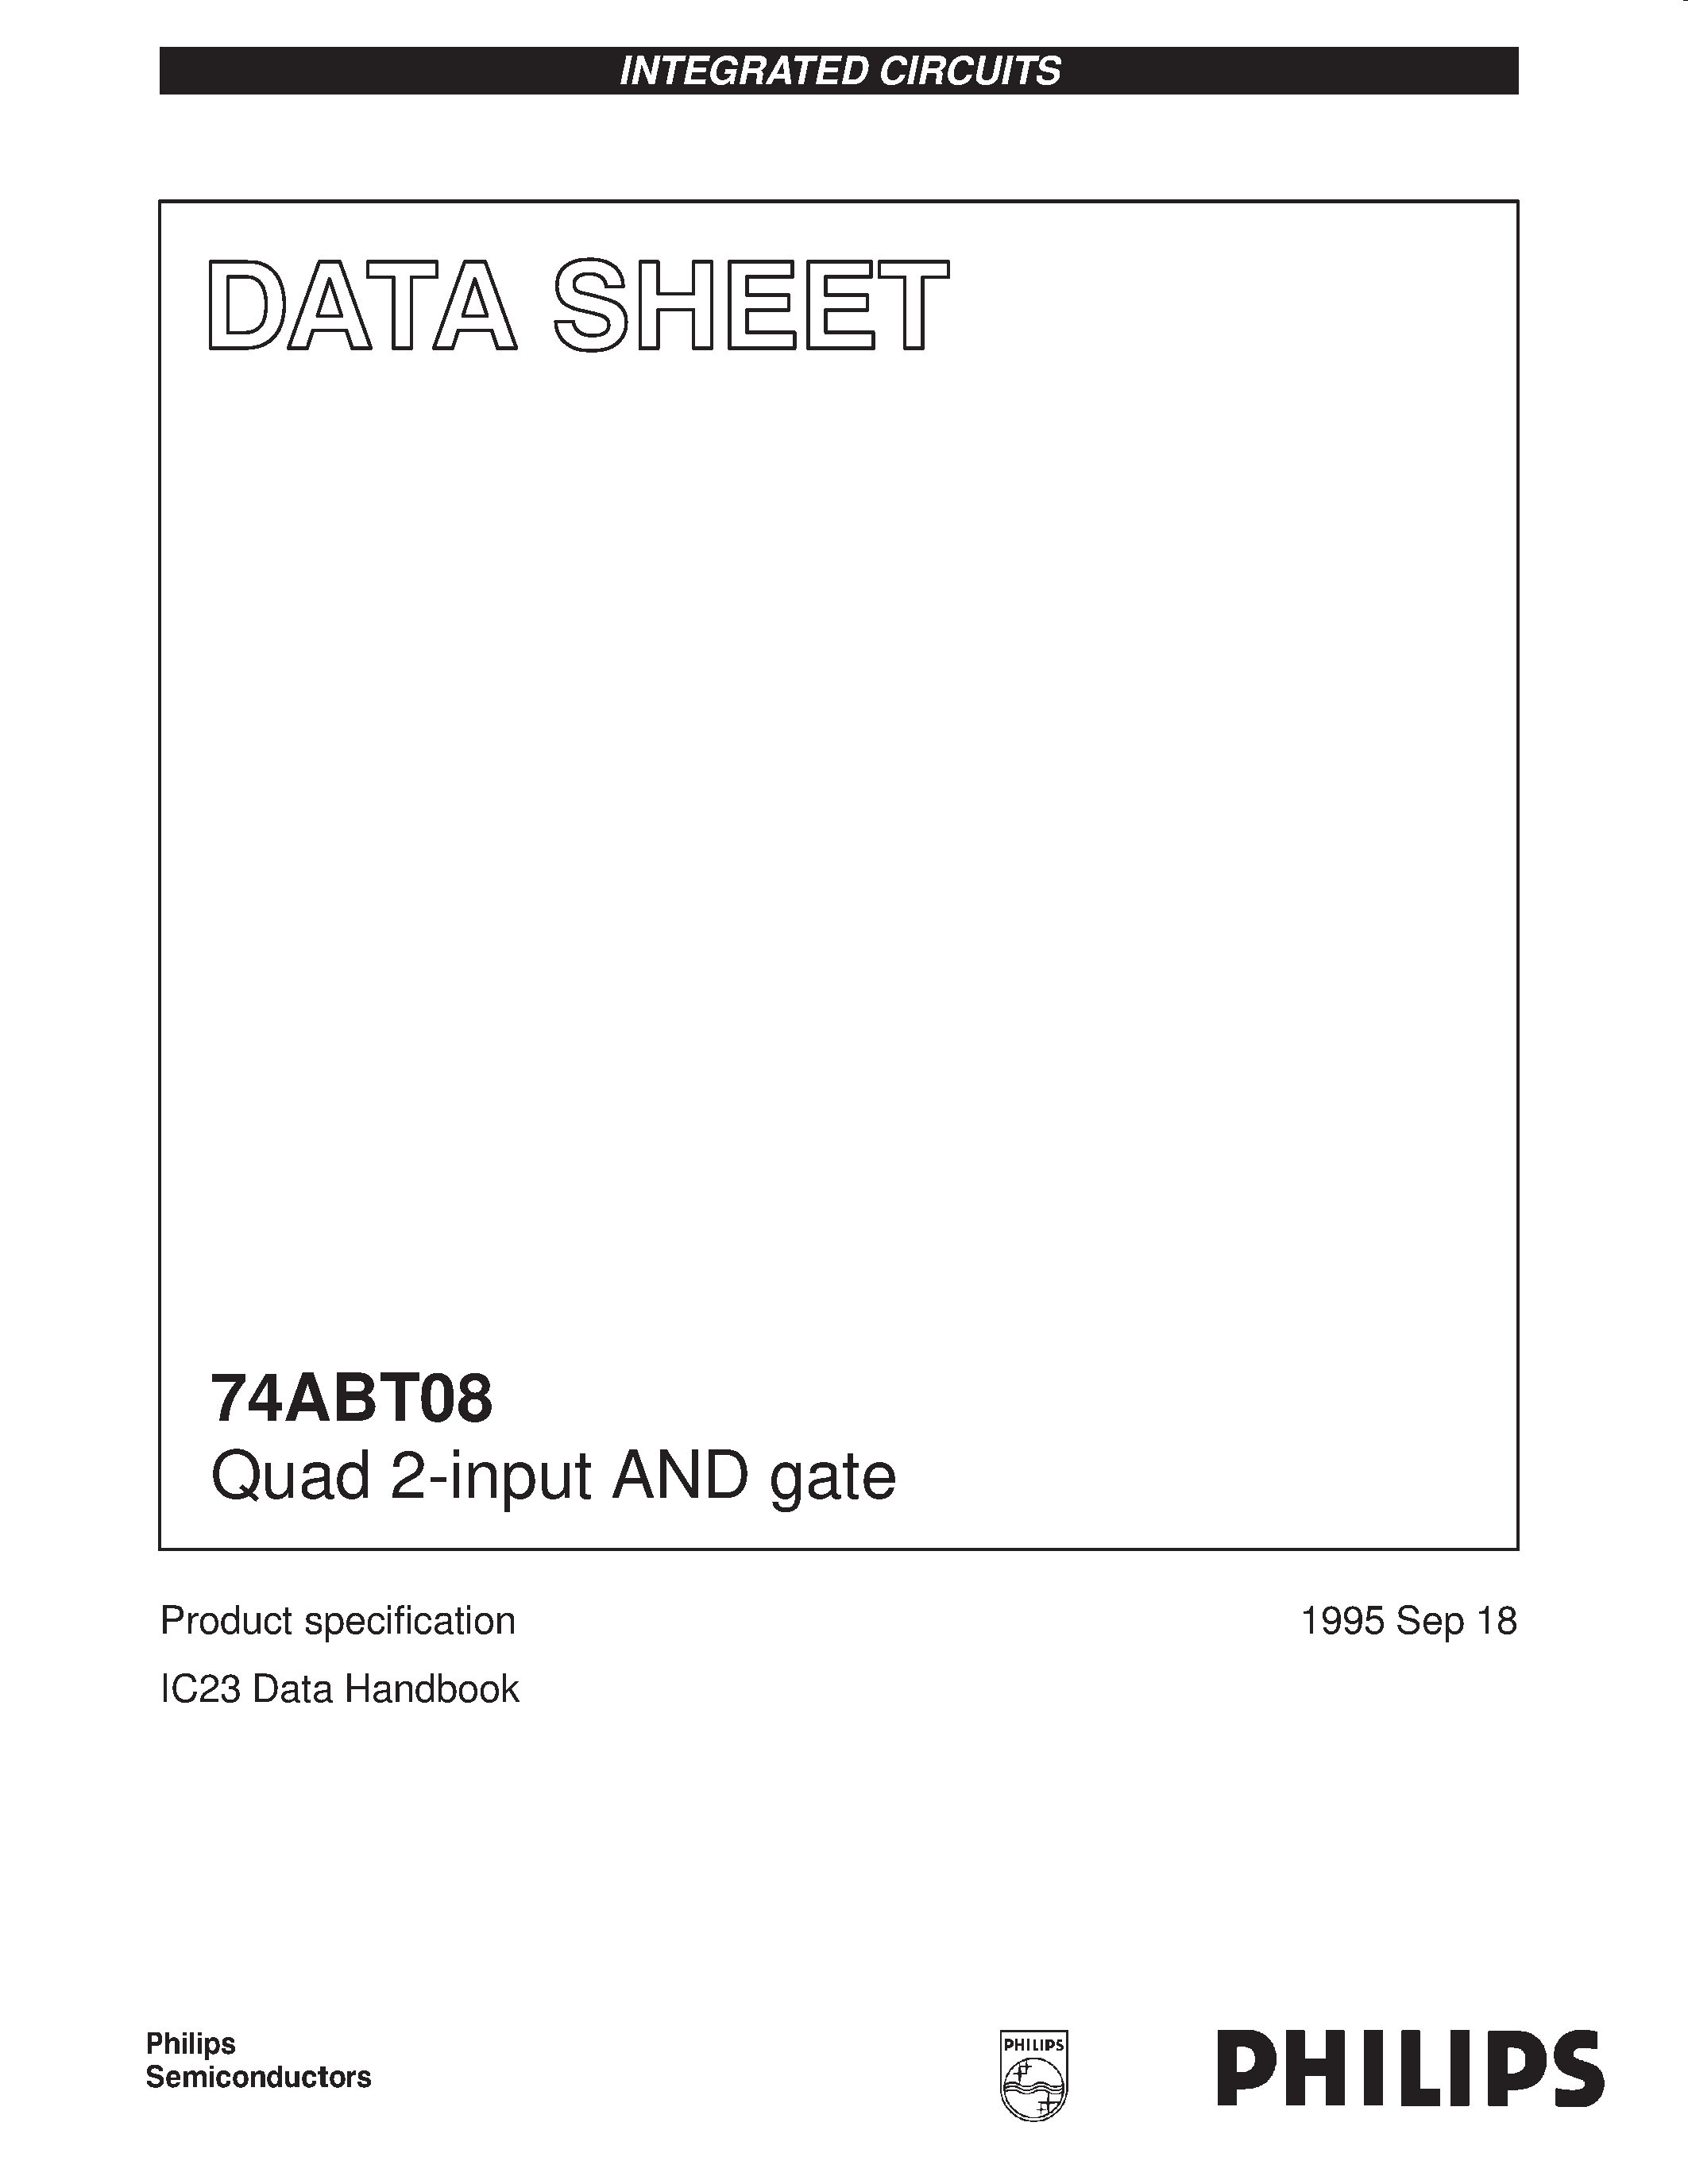 Даташит 74ABT08D - Quad 2-input AND gate страница 1